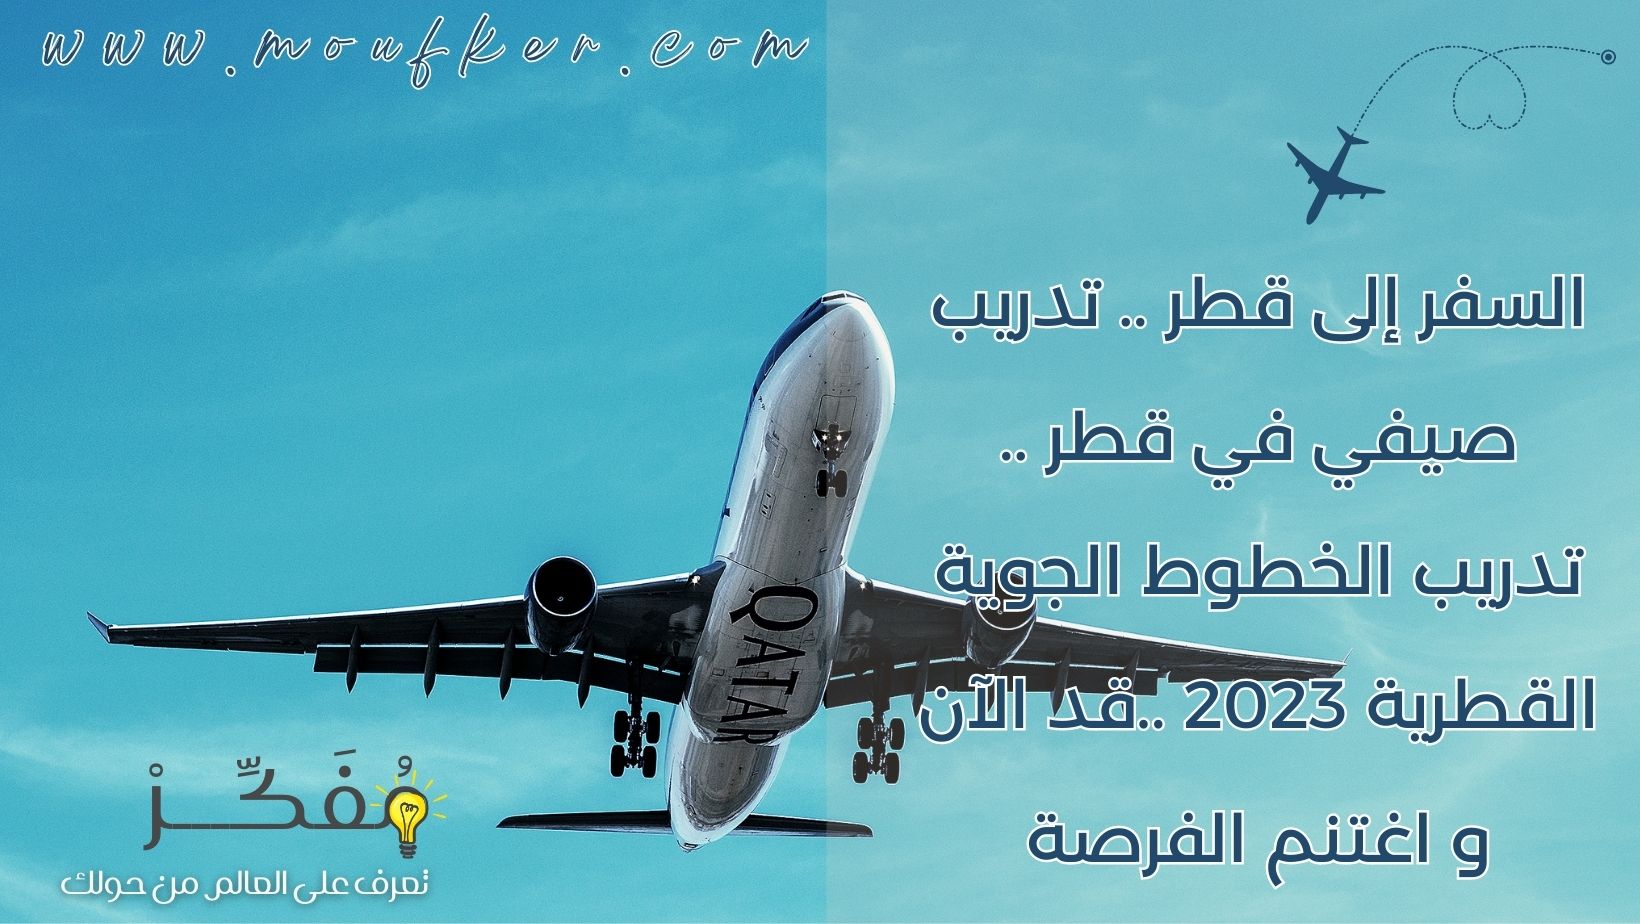 السفر إلى قطر .. تدريب صيفي في قطر .. تدريب الخطوط الجوية القطرية 2023 ..قد الآن و اغتنم الفرصة